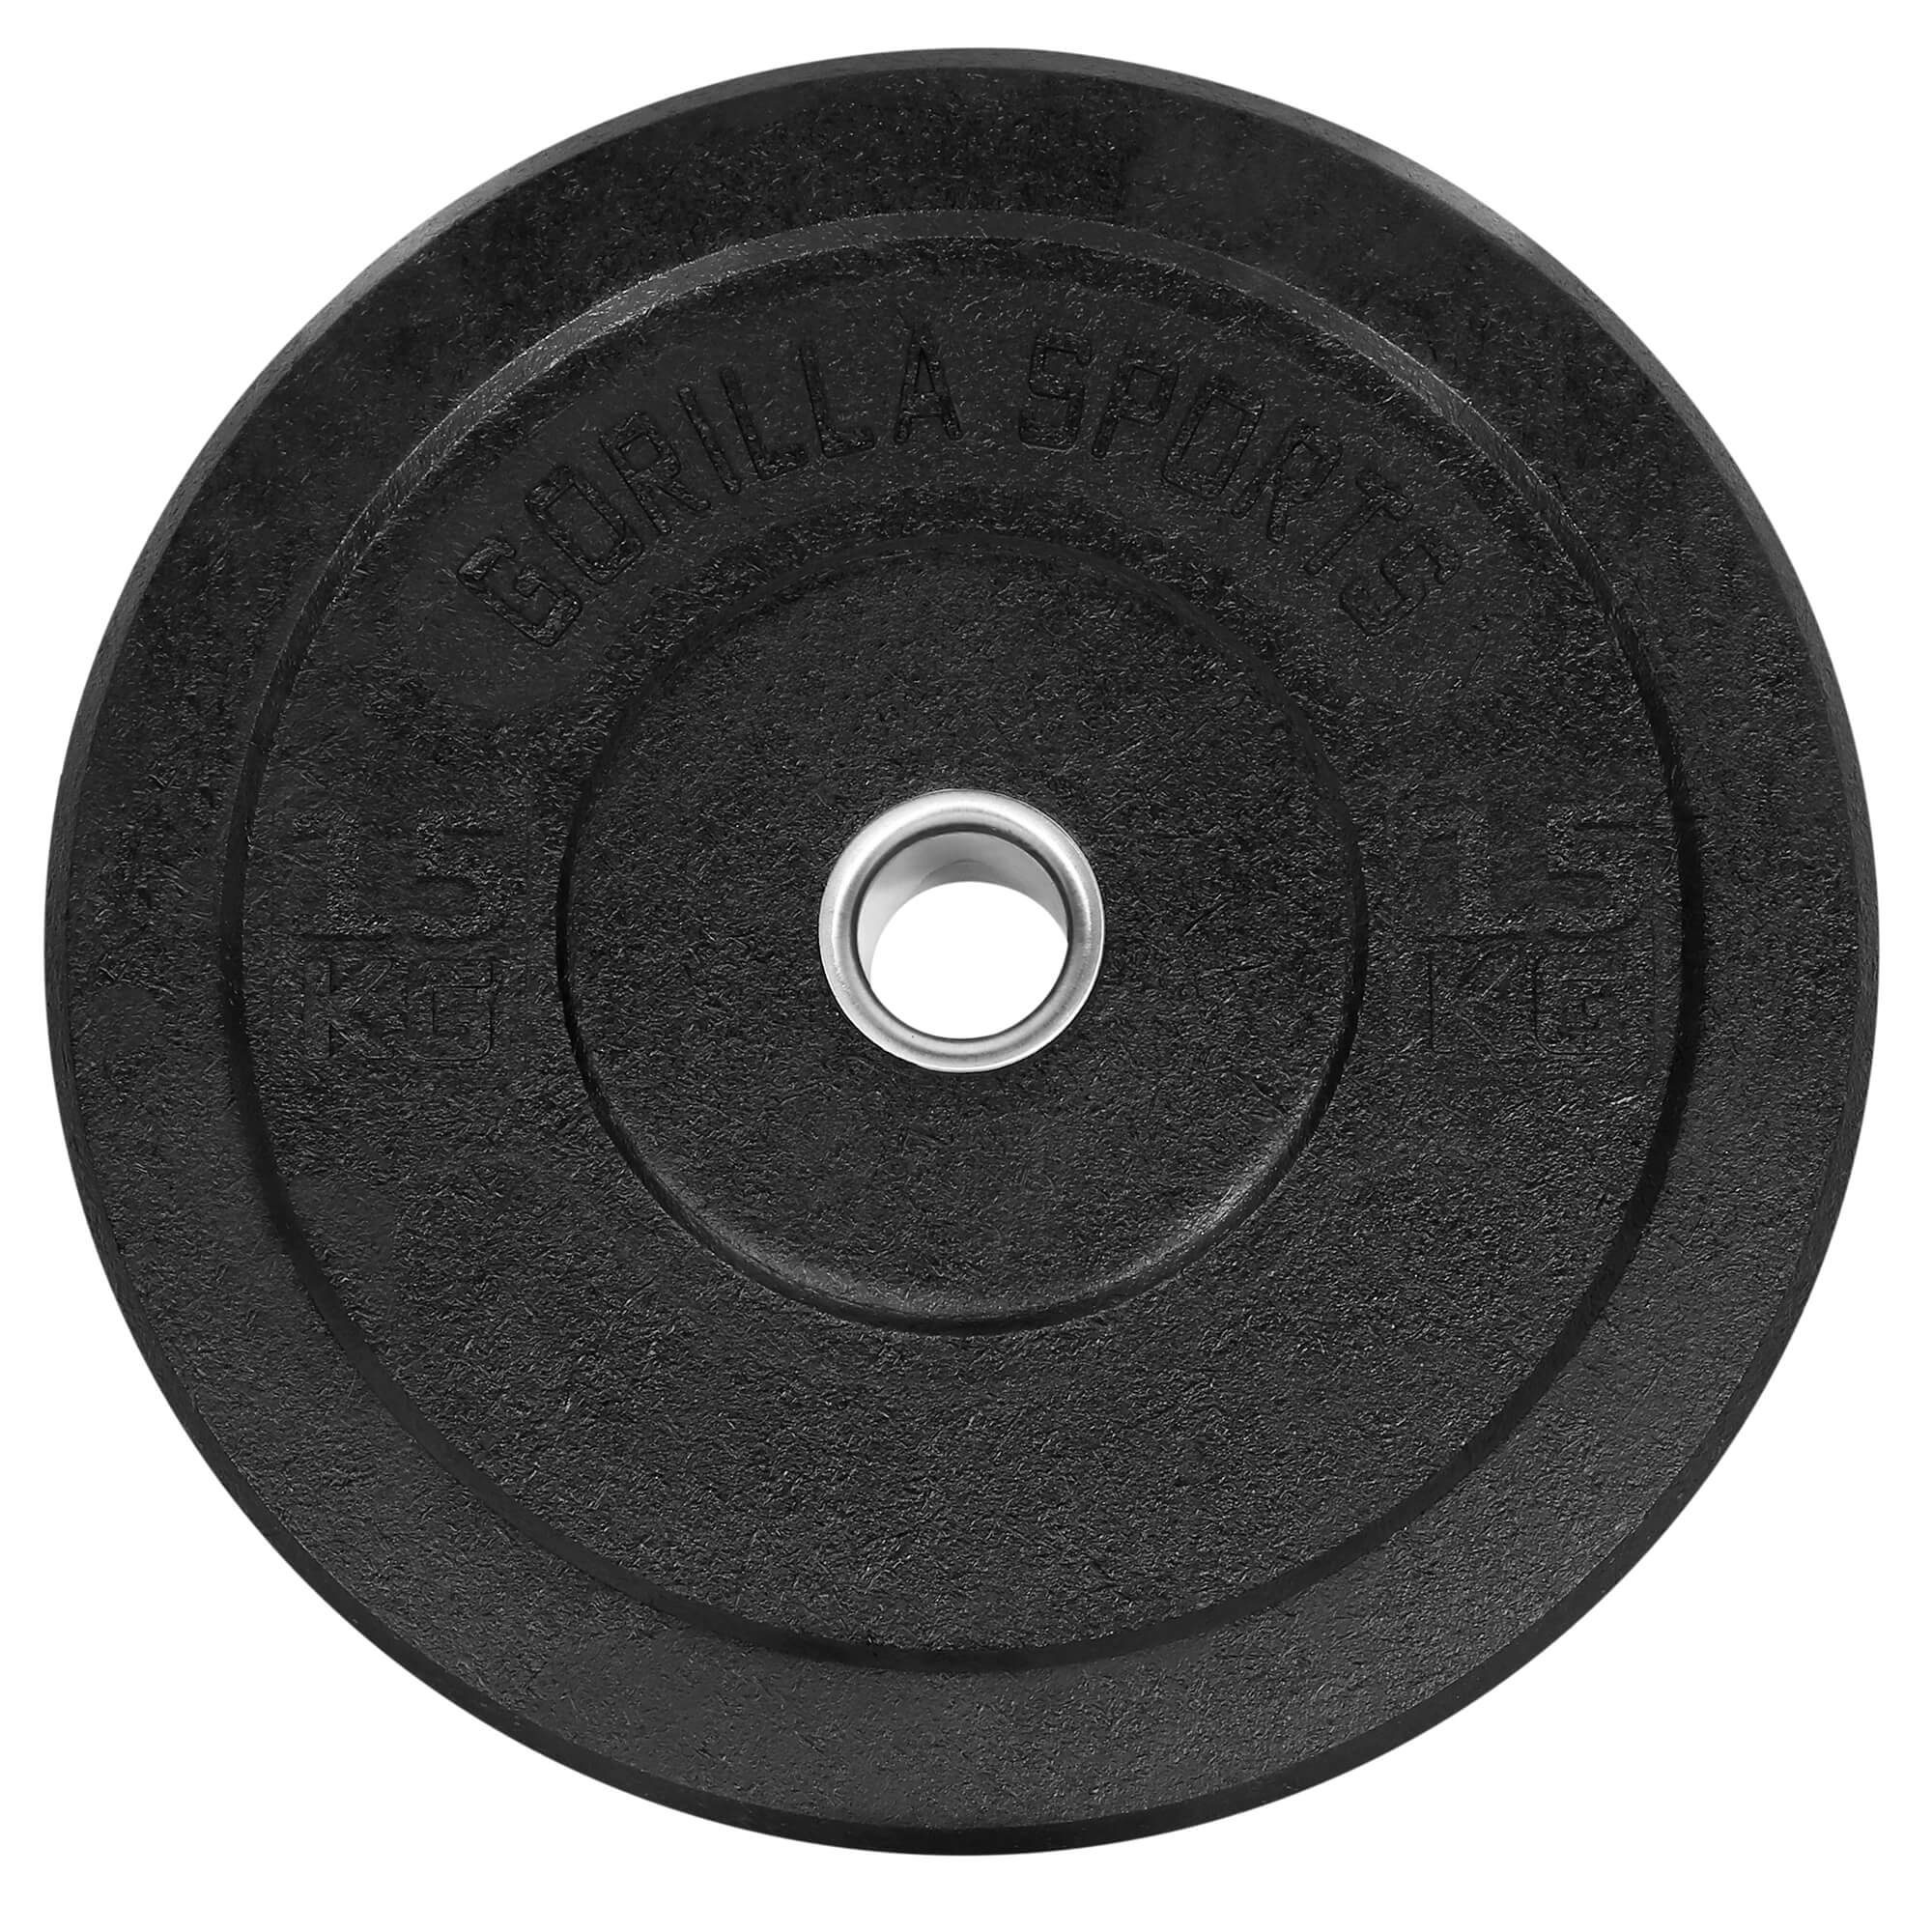 Plates,Gewichtsscheiben Olympia,5-50kg GORILLA Set Hantelscheiben 2x15kg Gewichte,Einzeln/Set,Bumper SPORTS